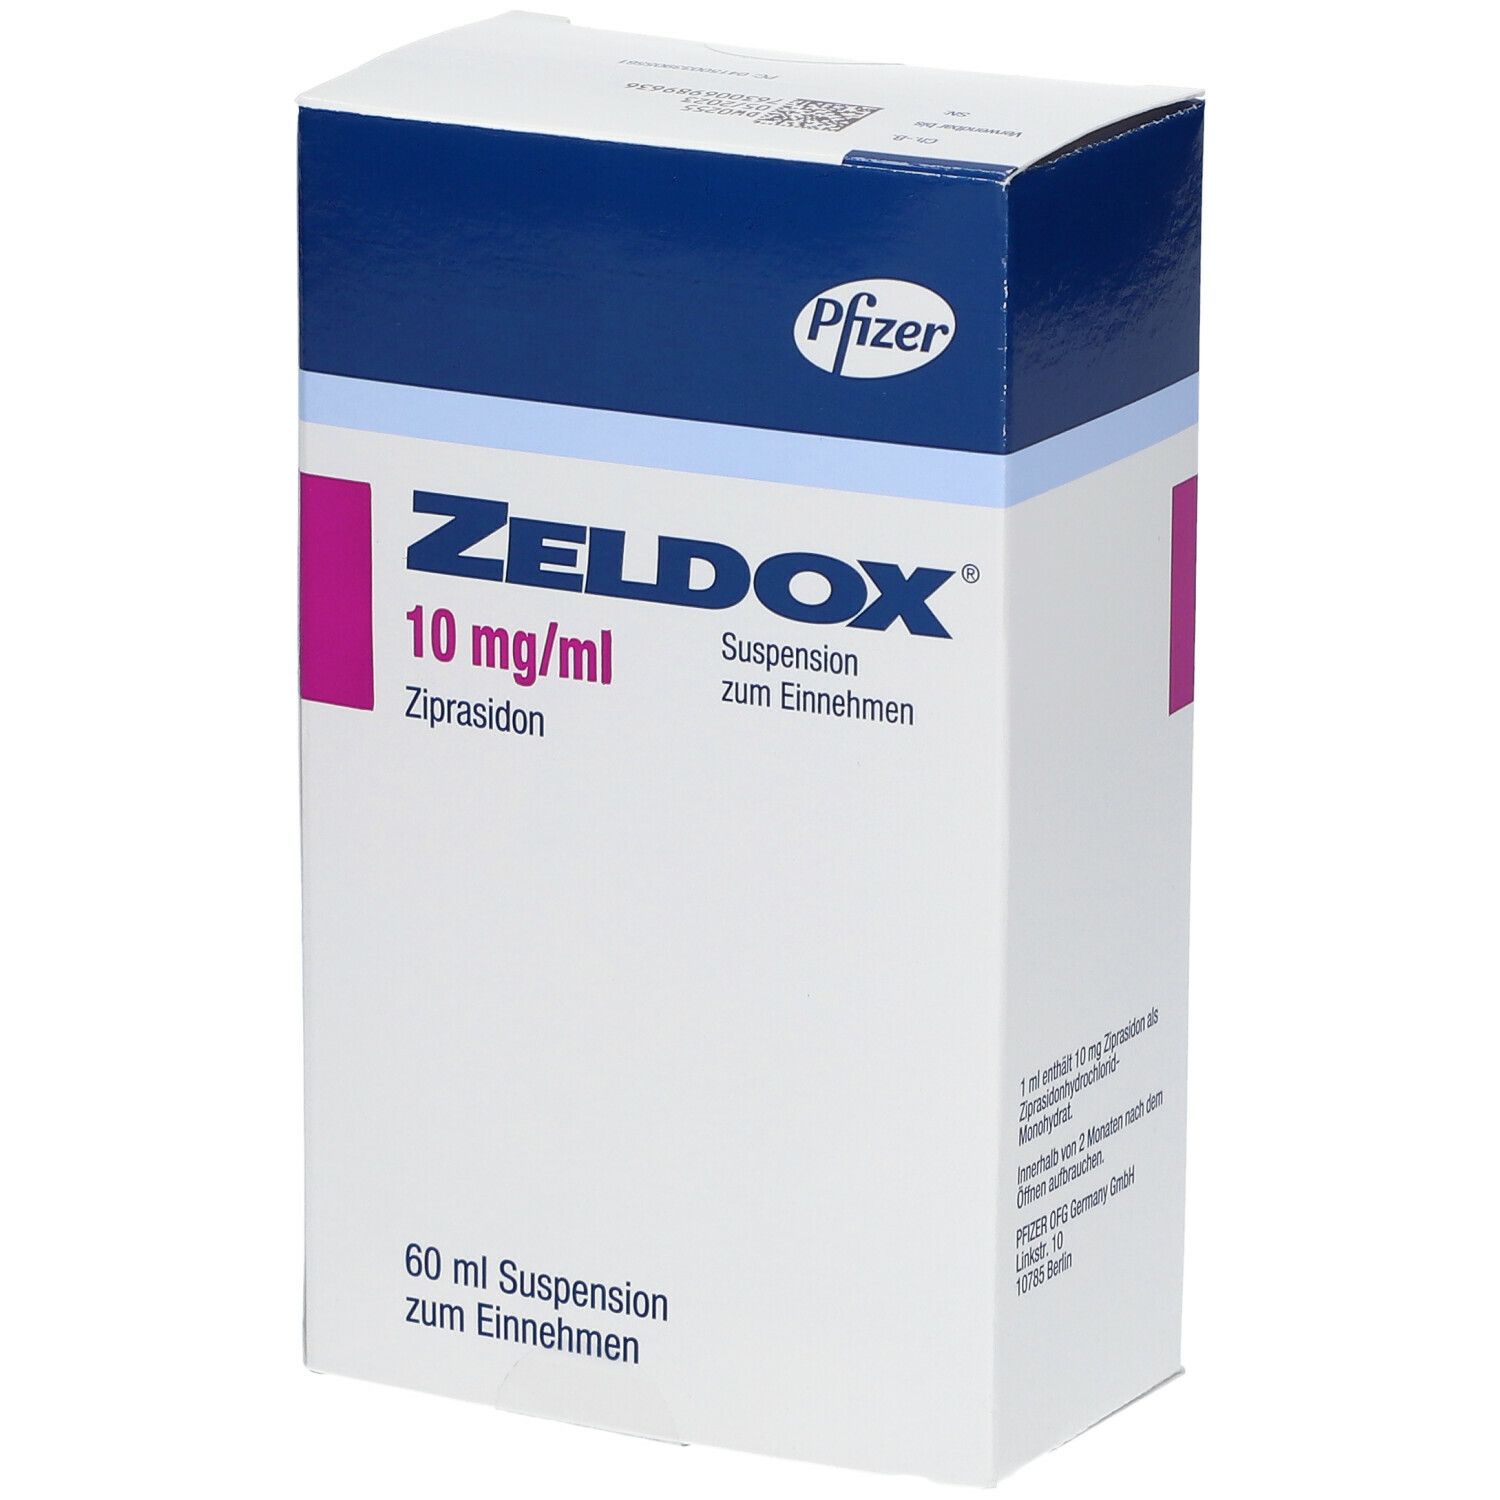 Zeldox® 10 mg/ml